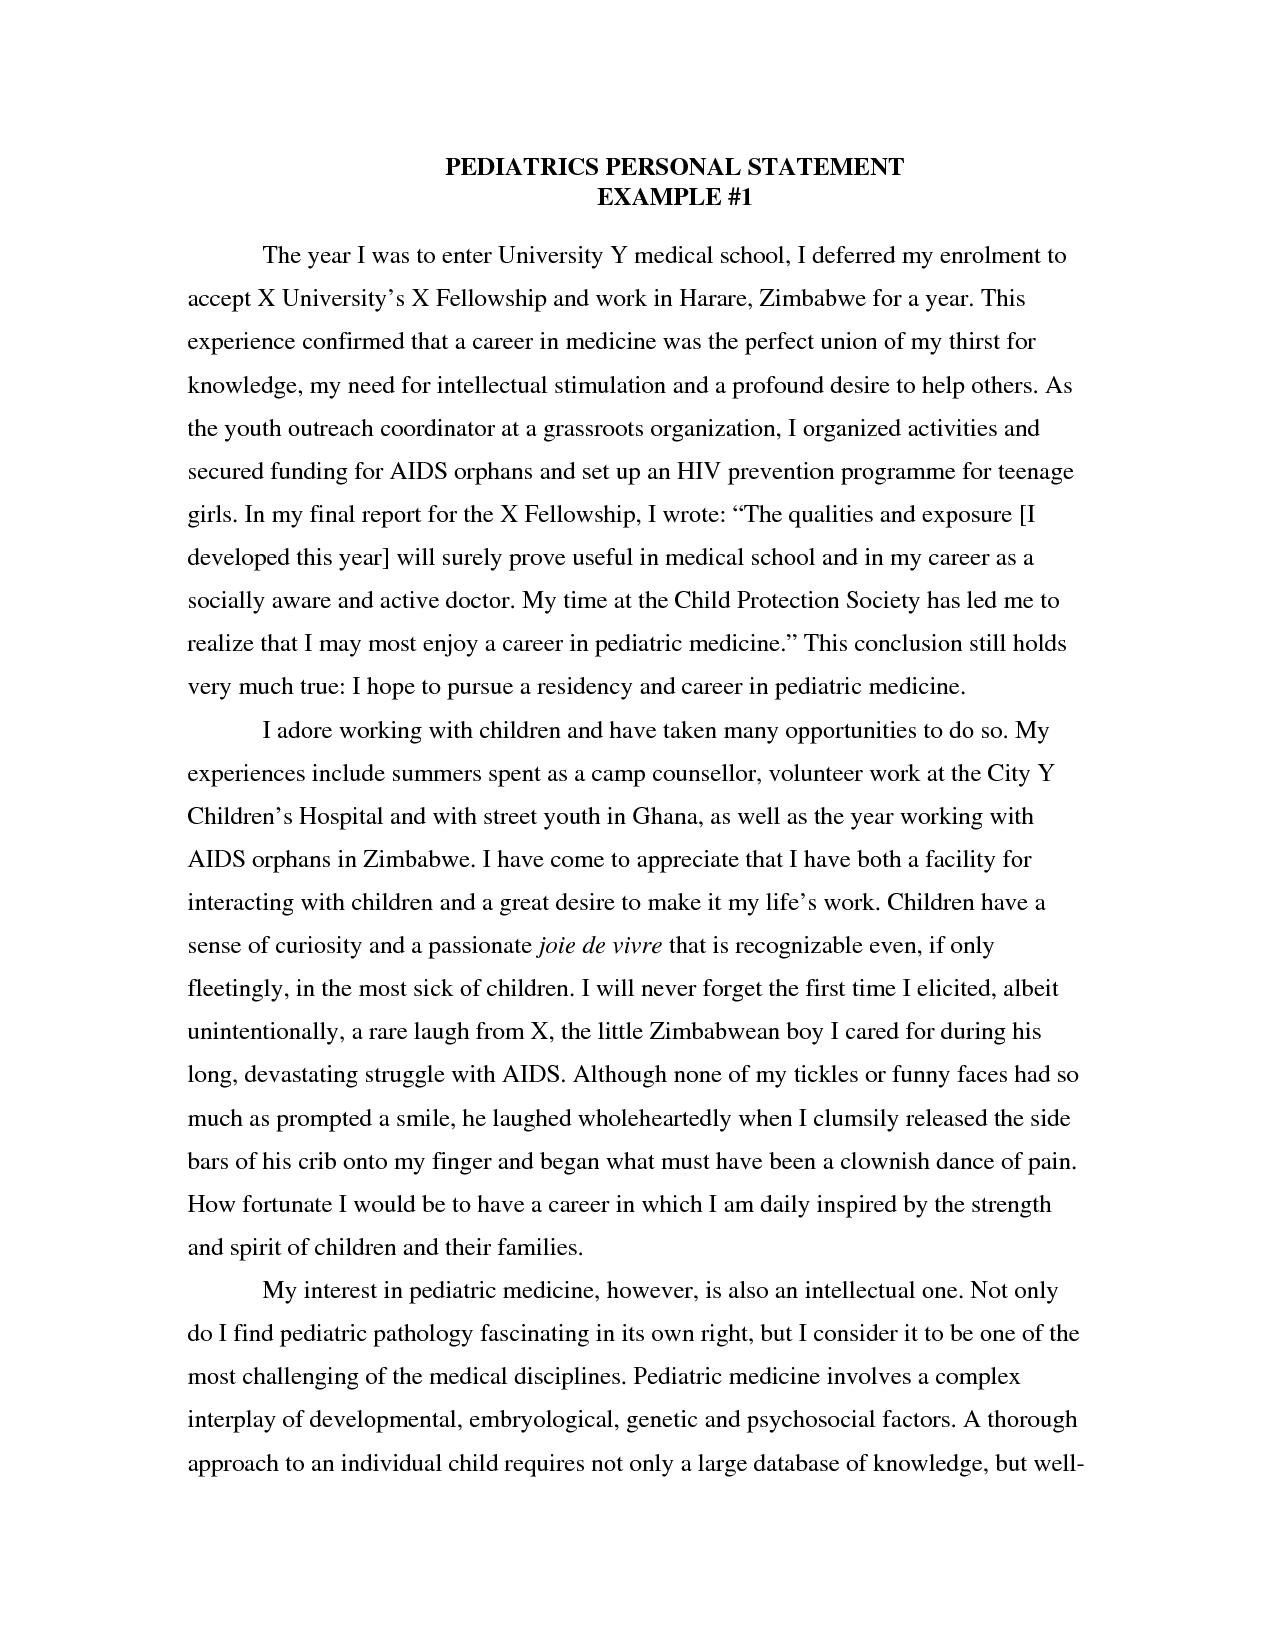 Essay custom essay writing - 2